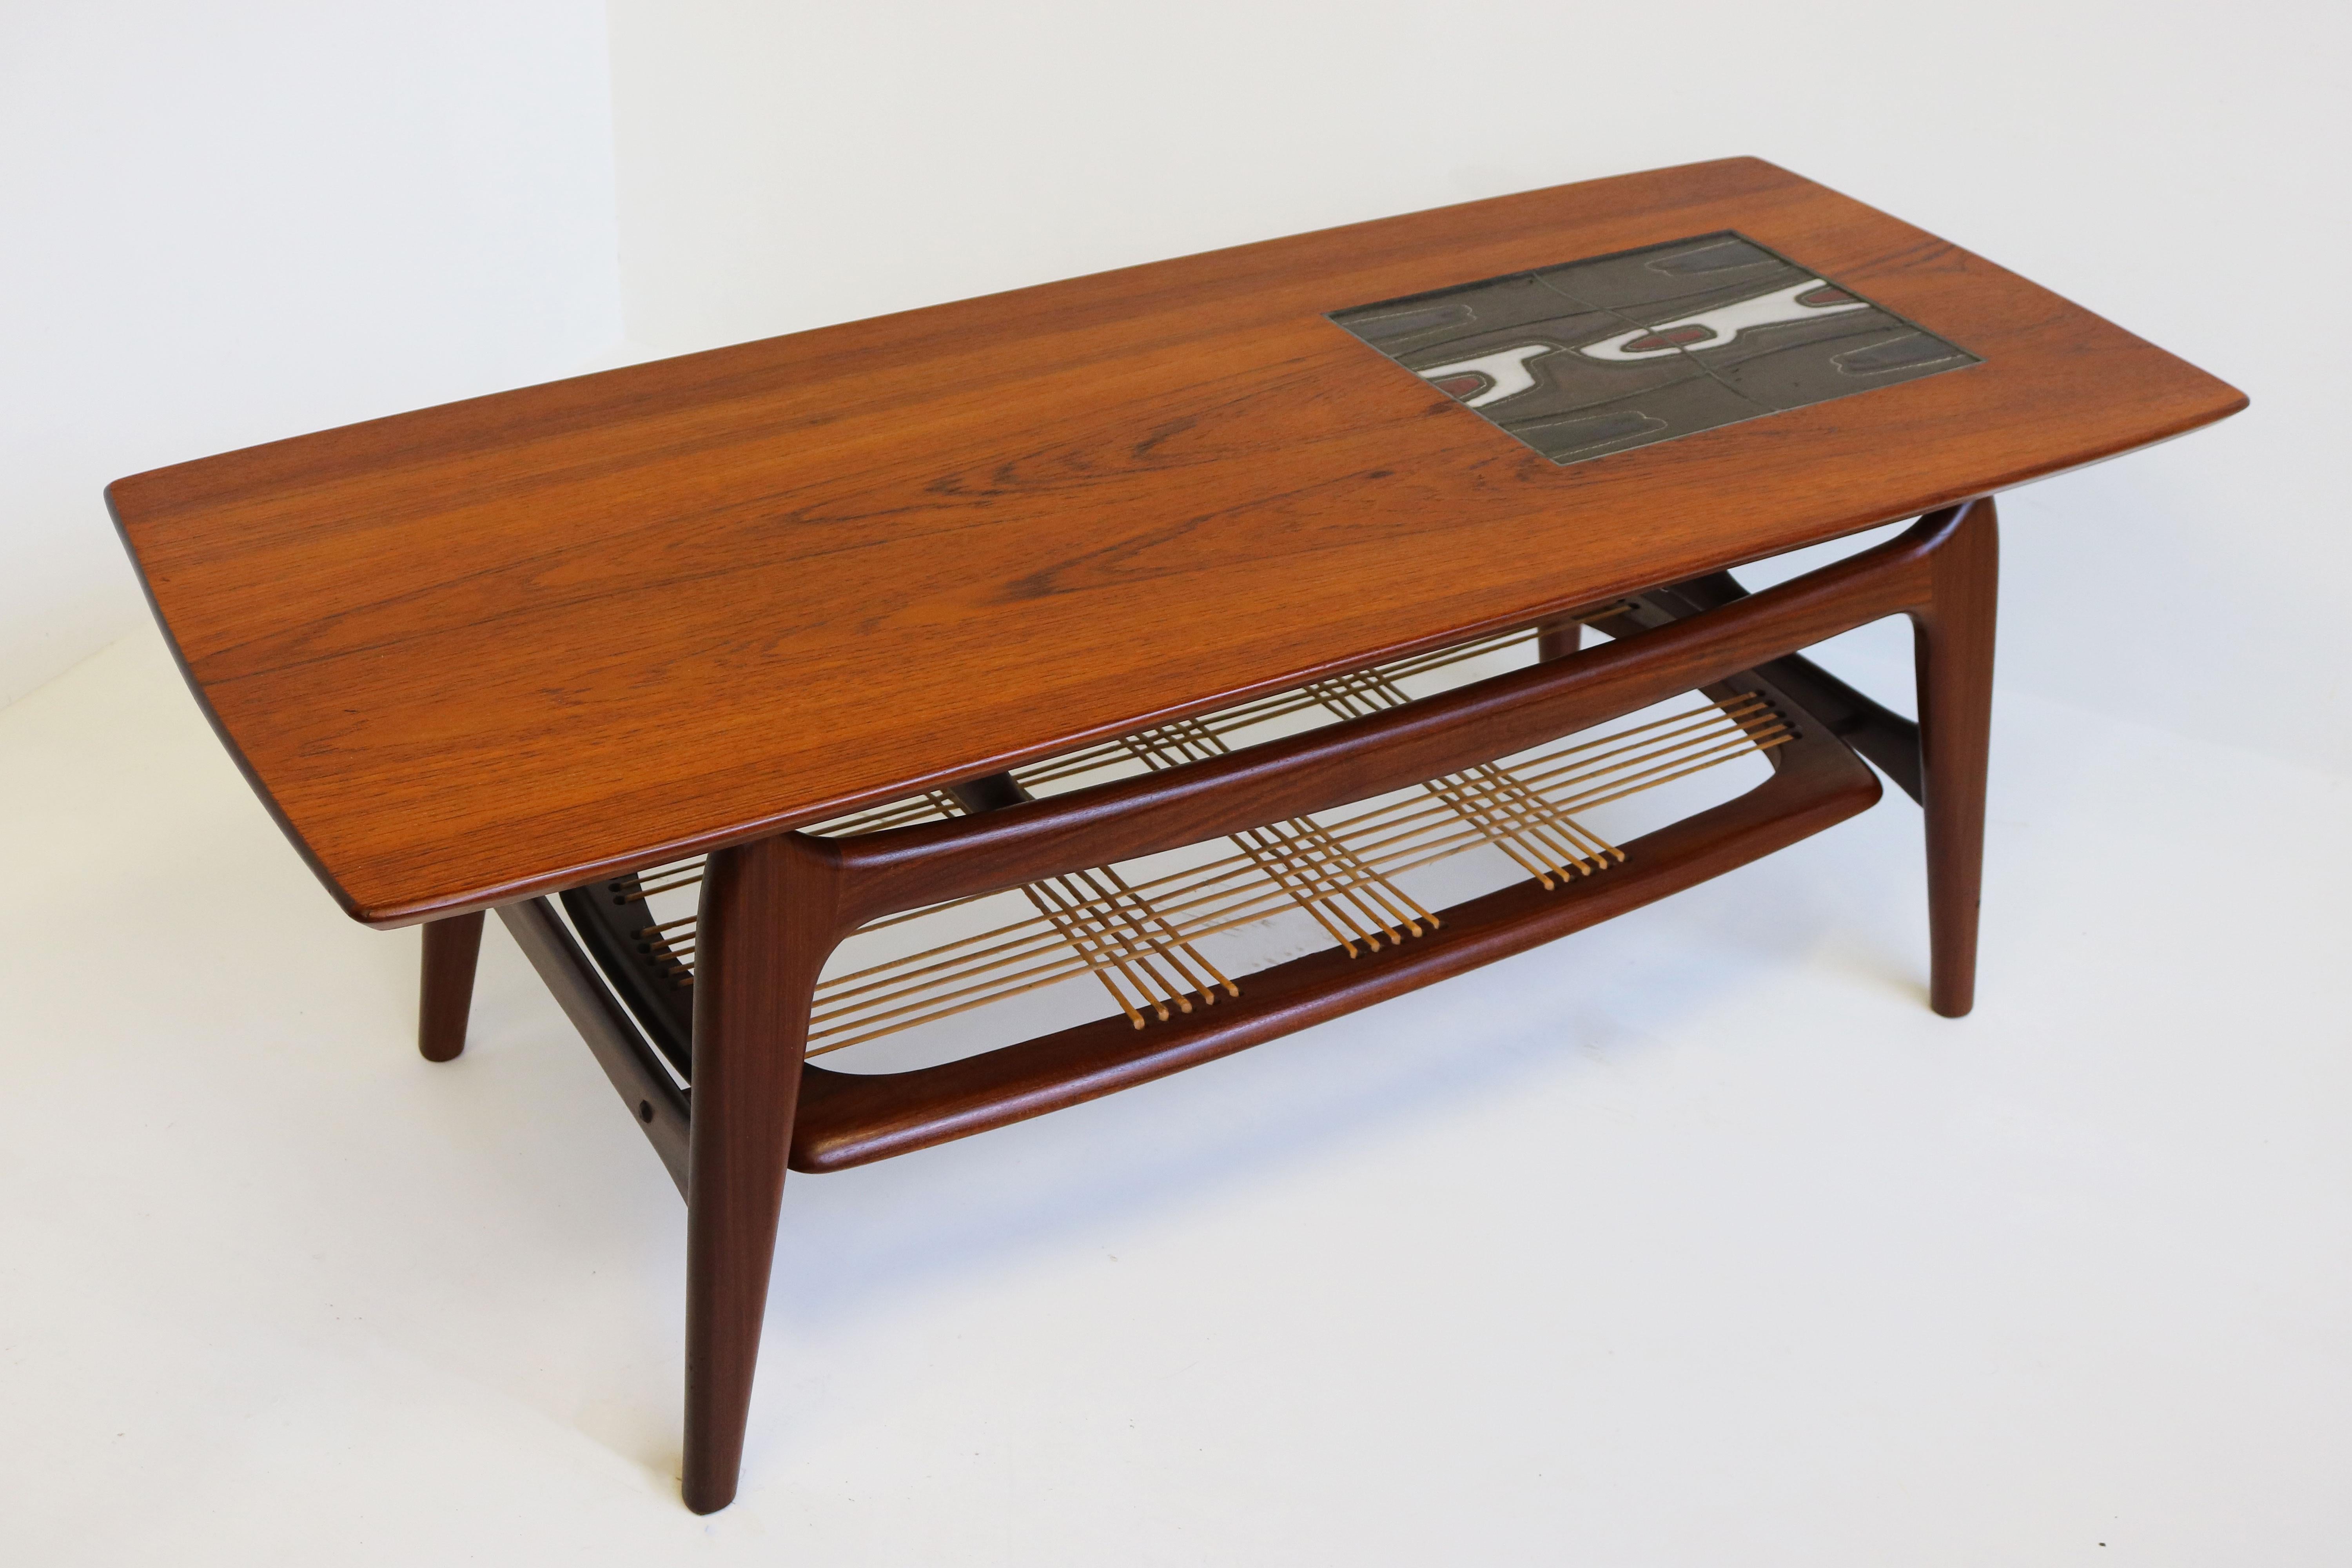 Dutch Vintage Design Coffee Table by Louis Van Teeffelen for Webe 1950 Teak Ceramic